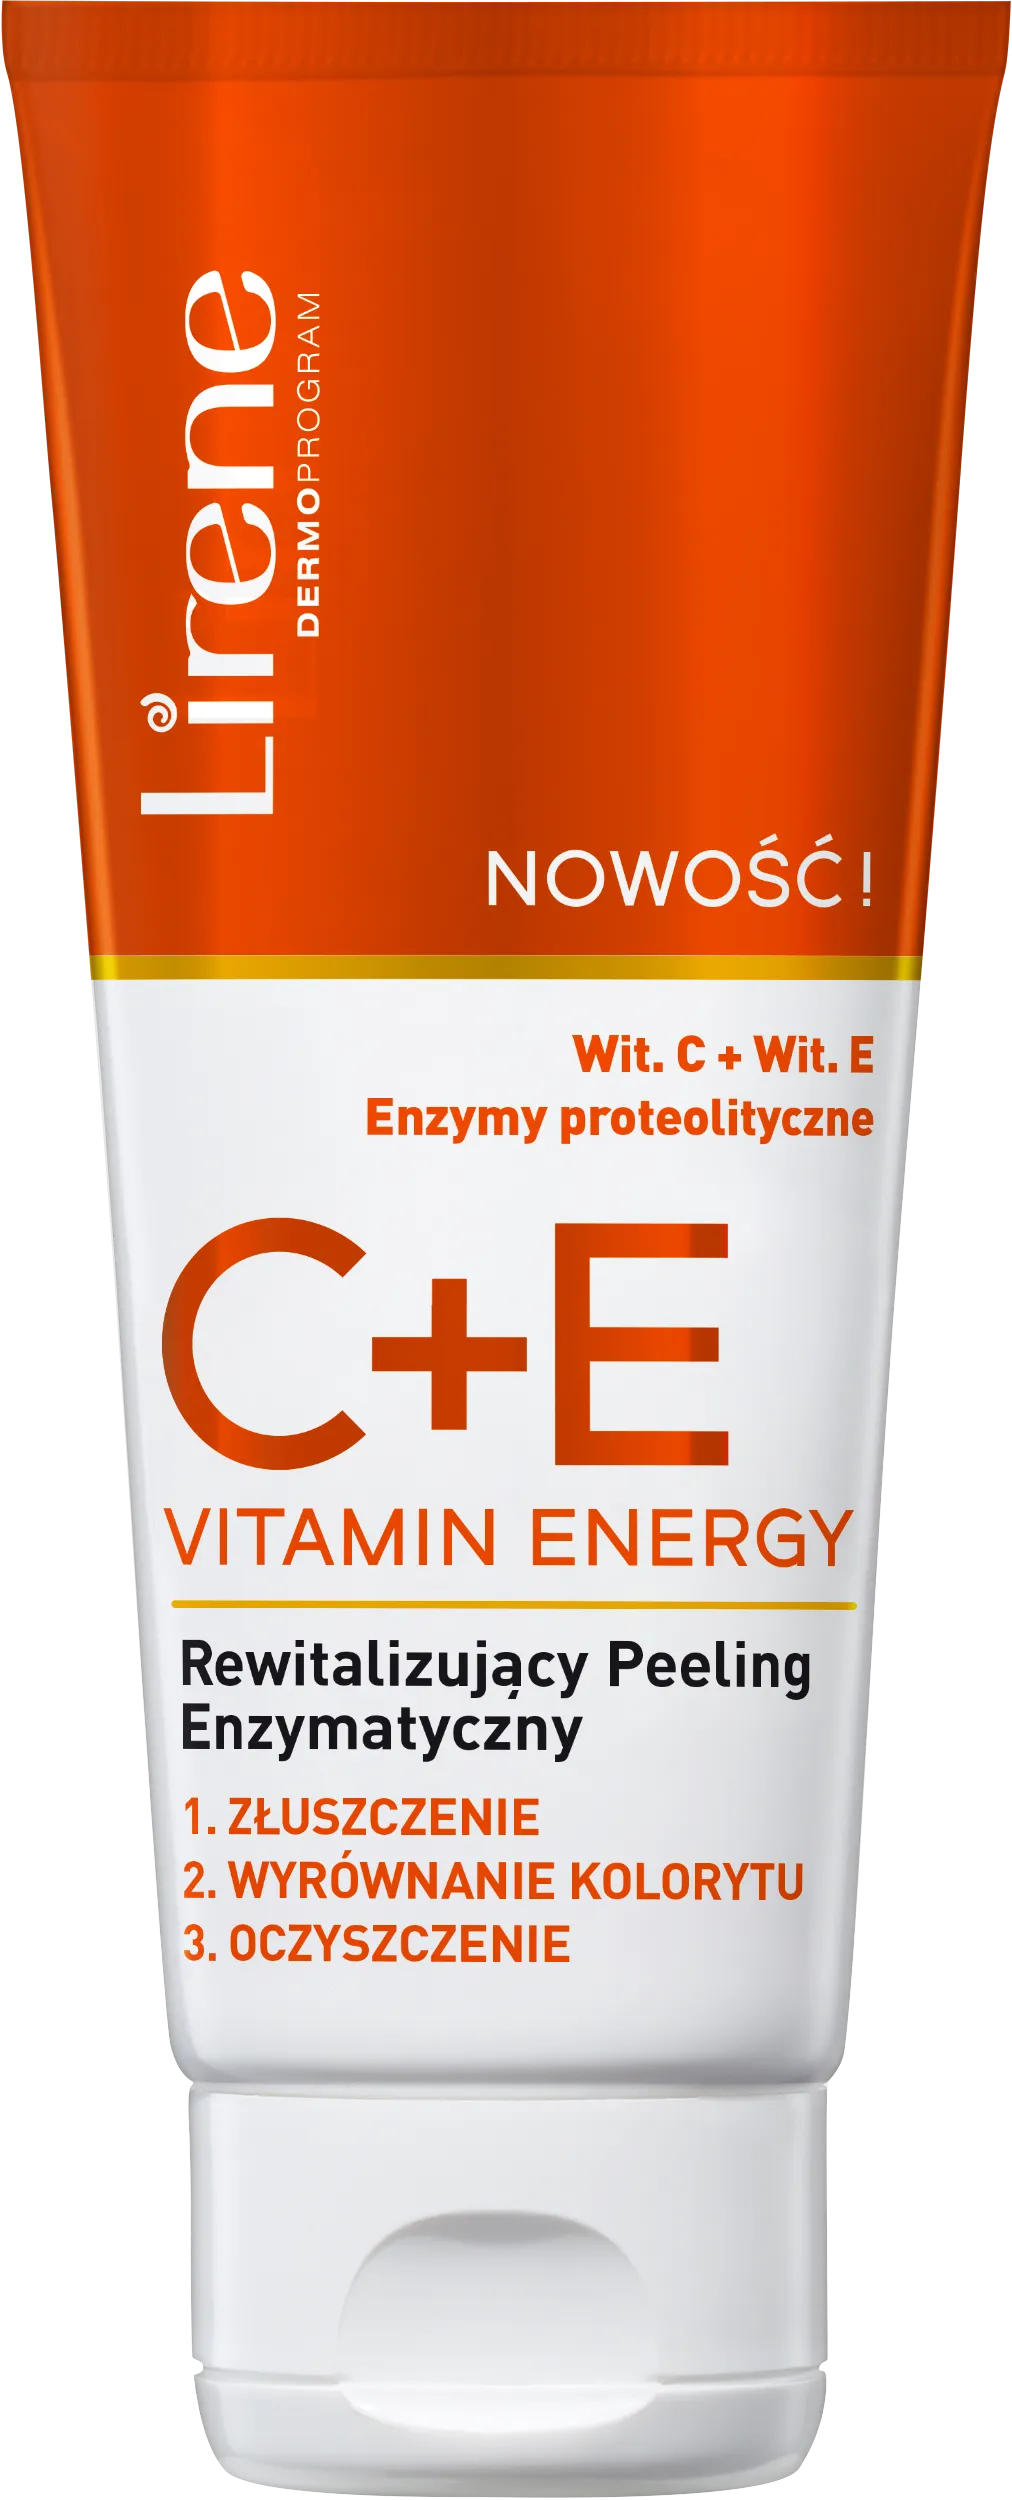 Lirene C+E VITAMIN ENERGY rewitalizujący peeling enzymatyczny, 75 ml